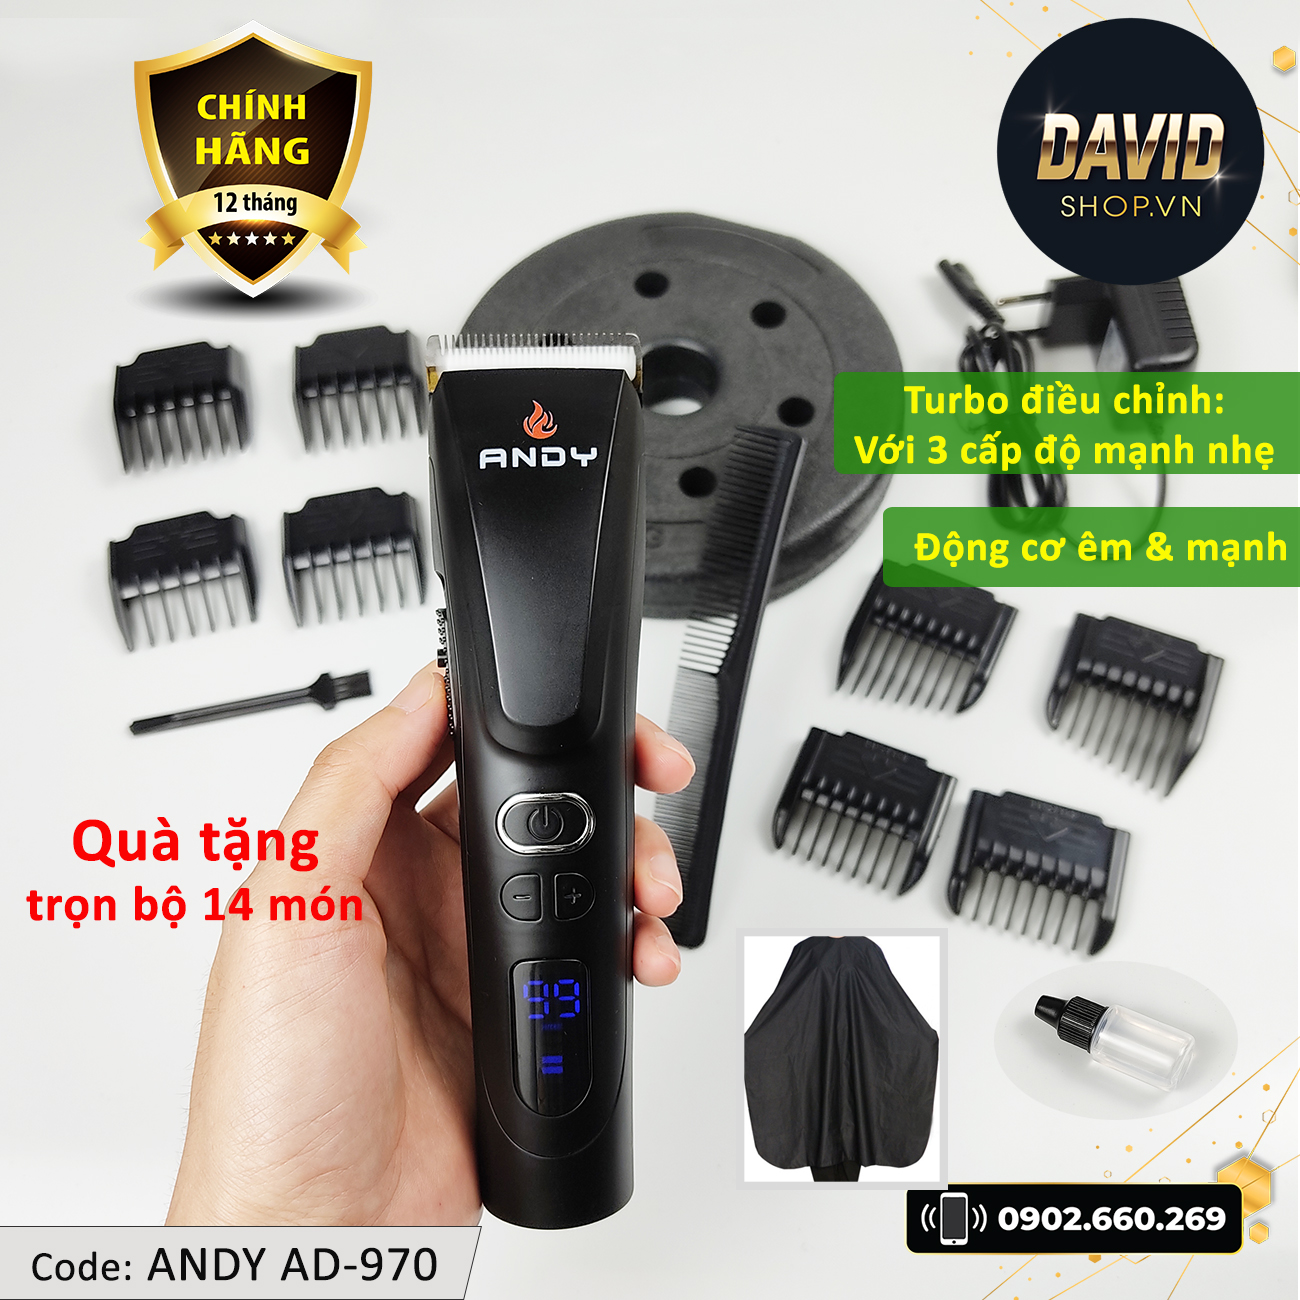 Tông đơ cắt tóc Andy AD-970 với 3 cấp độ điều chỉnh, động cơ siêu mạnh